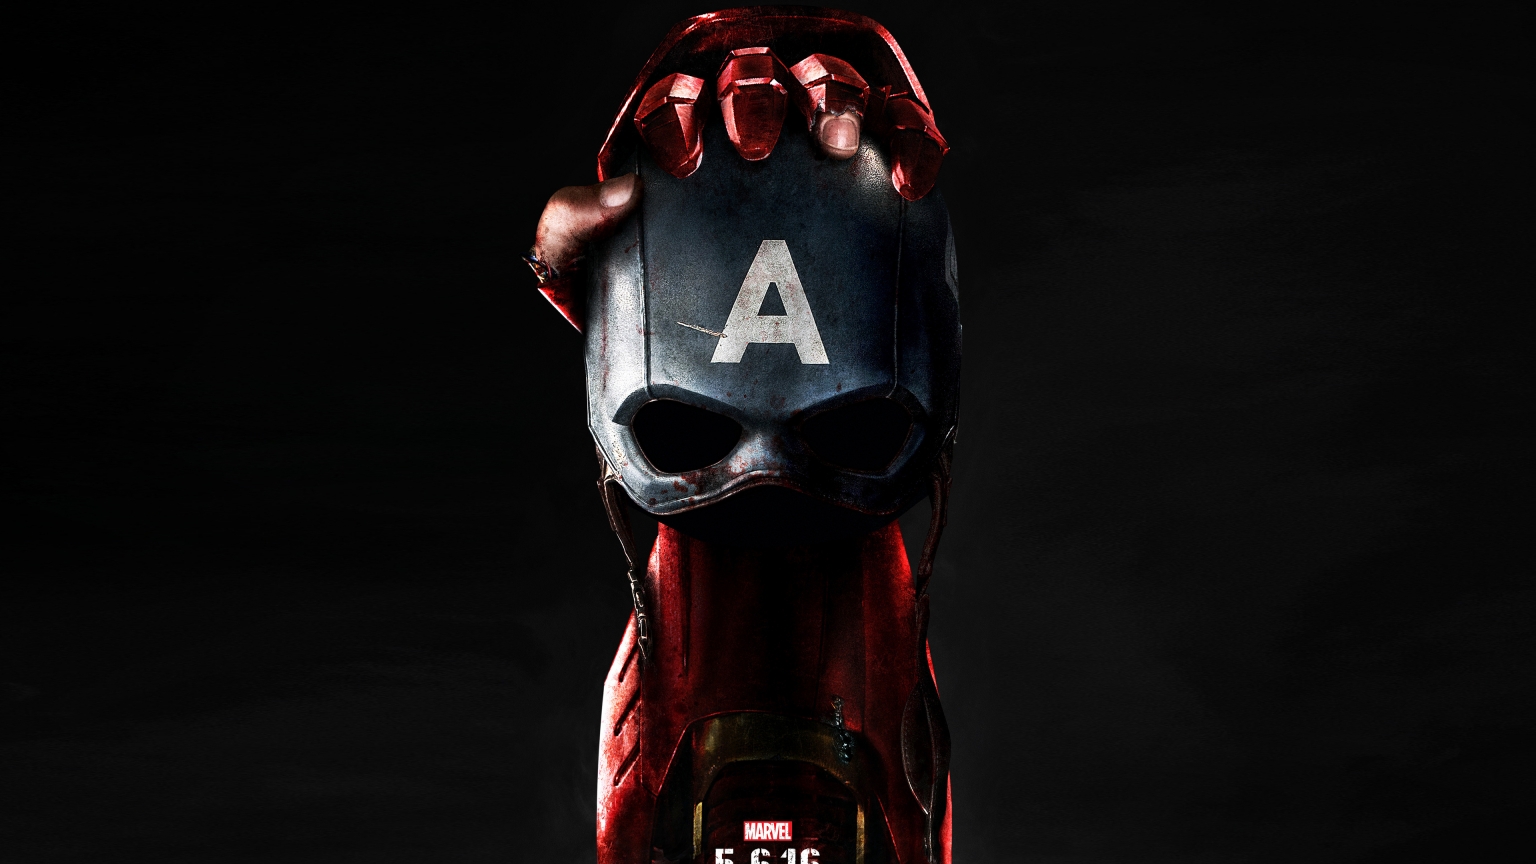 Captain America Civil War Poster 2016 for 1536 x 864 HDTV resolution